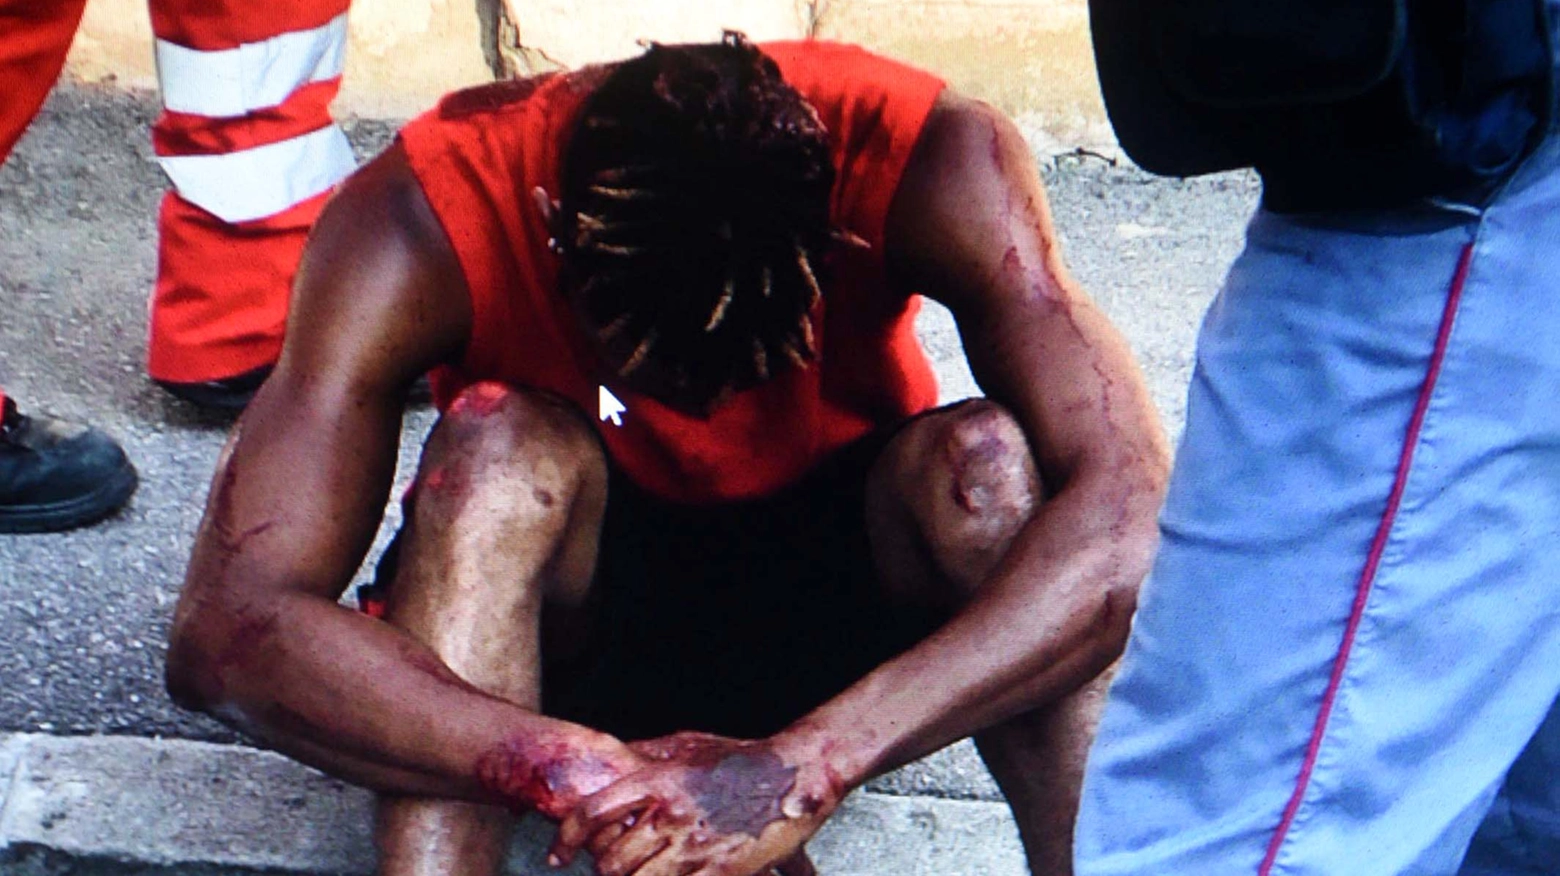 Il ragazzo ferito durante l'aggressione in via Oroboni